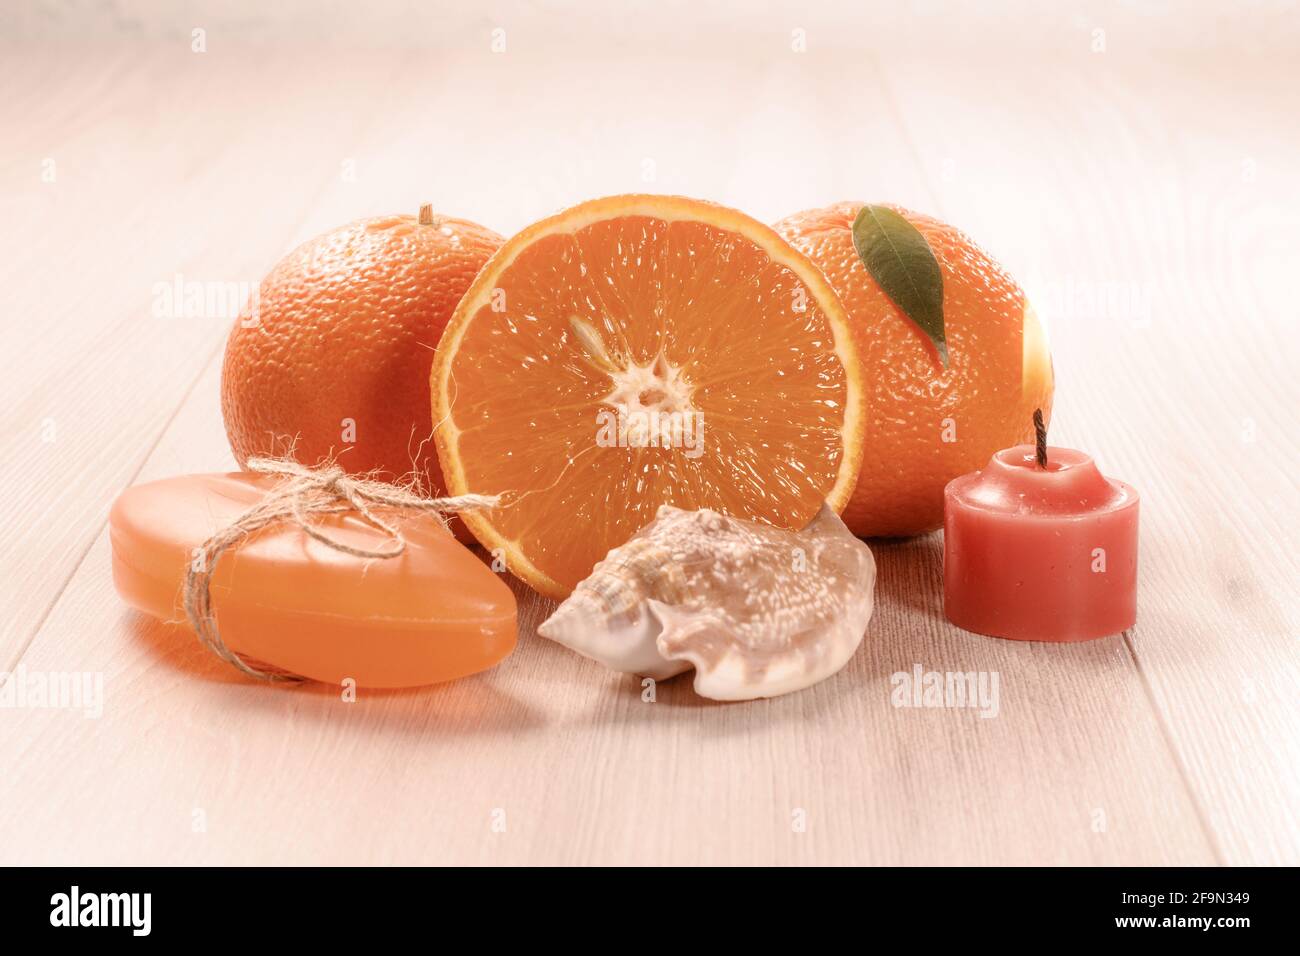 Schneiden Sie Orange mit zwei ganzen Orangen, Seife, Muscheln und brennender Kerze. Stockfoto